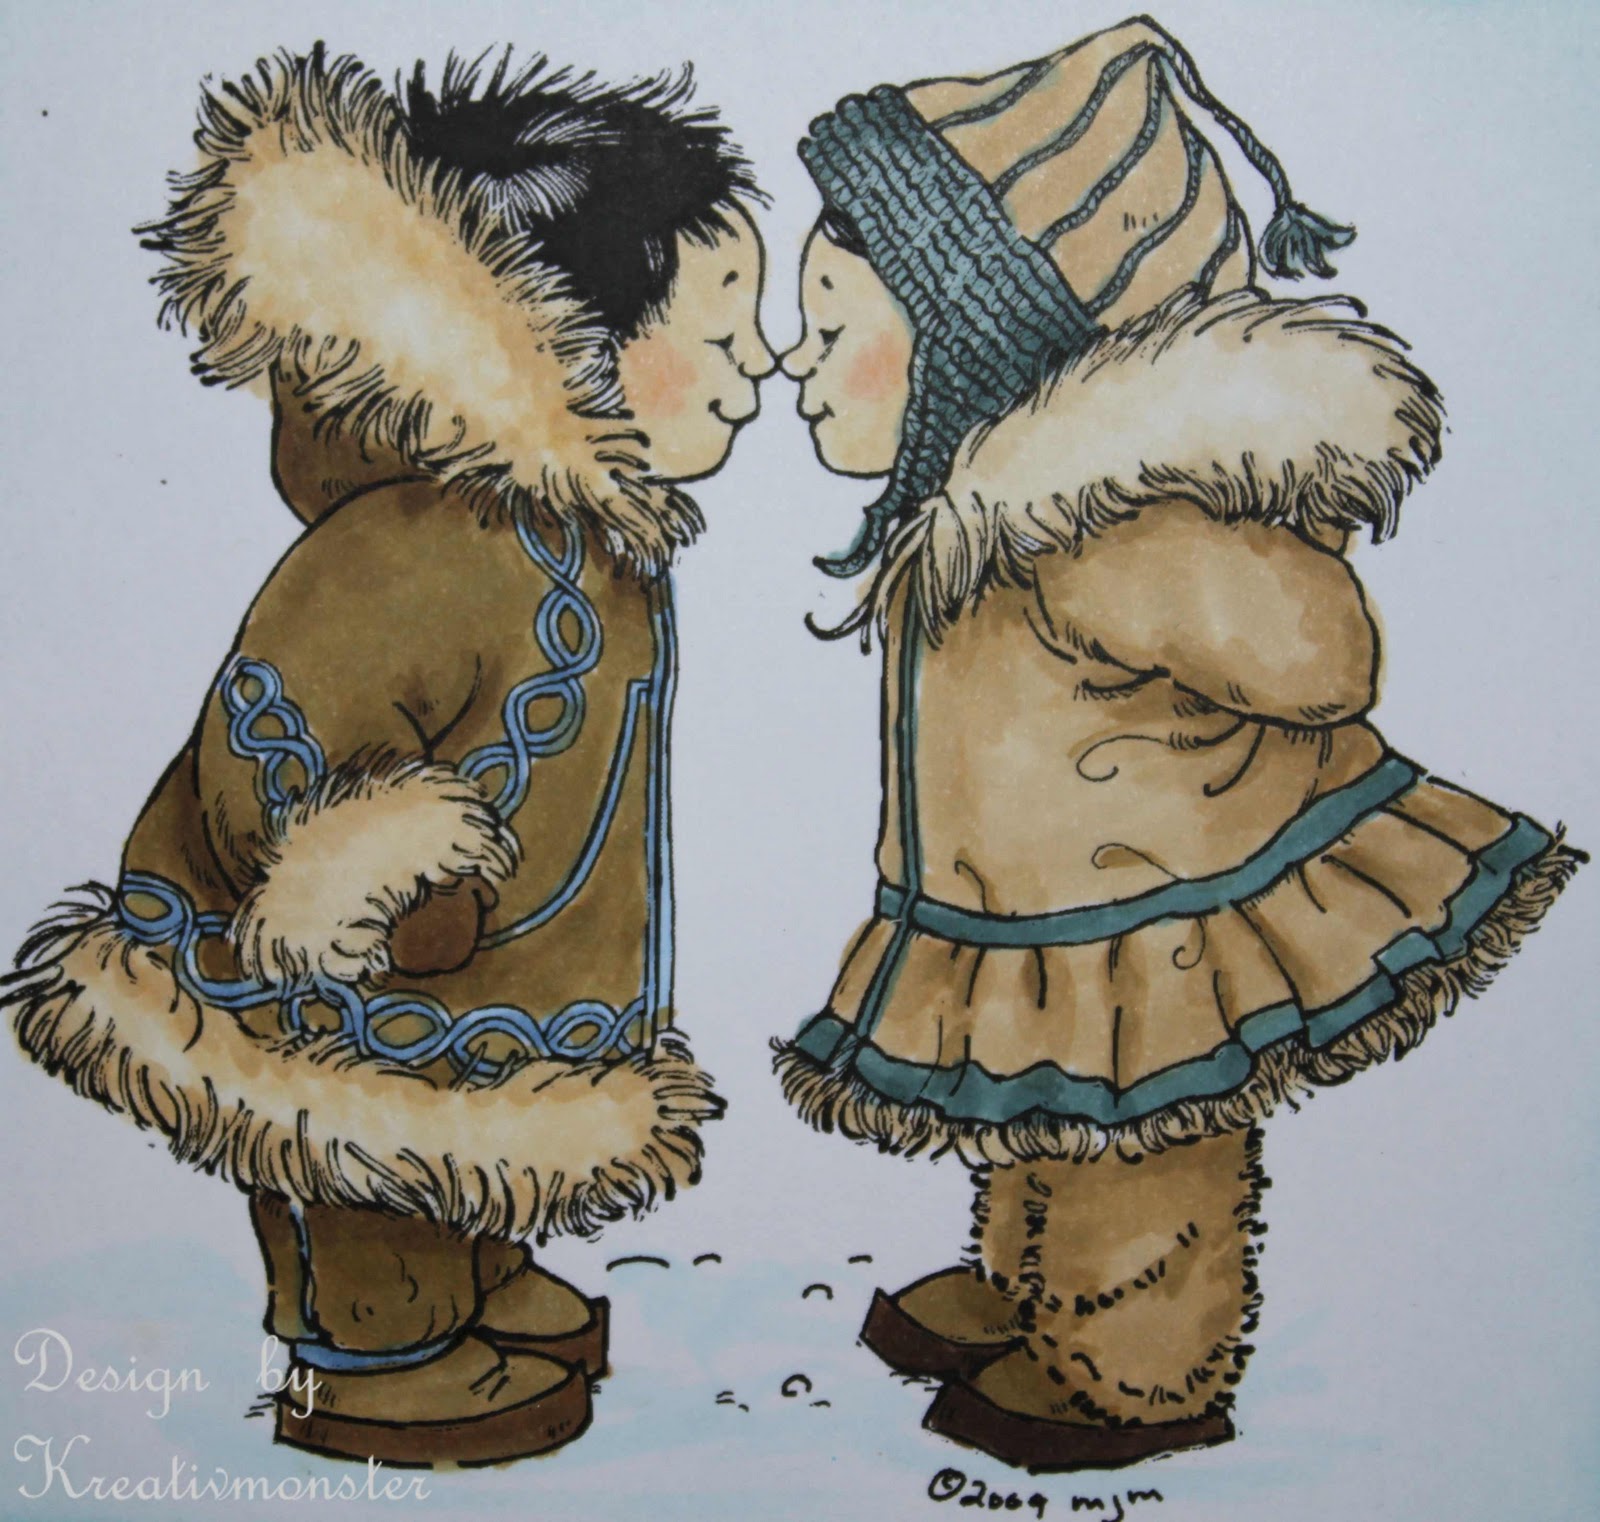 Kleidung der inuit